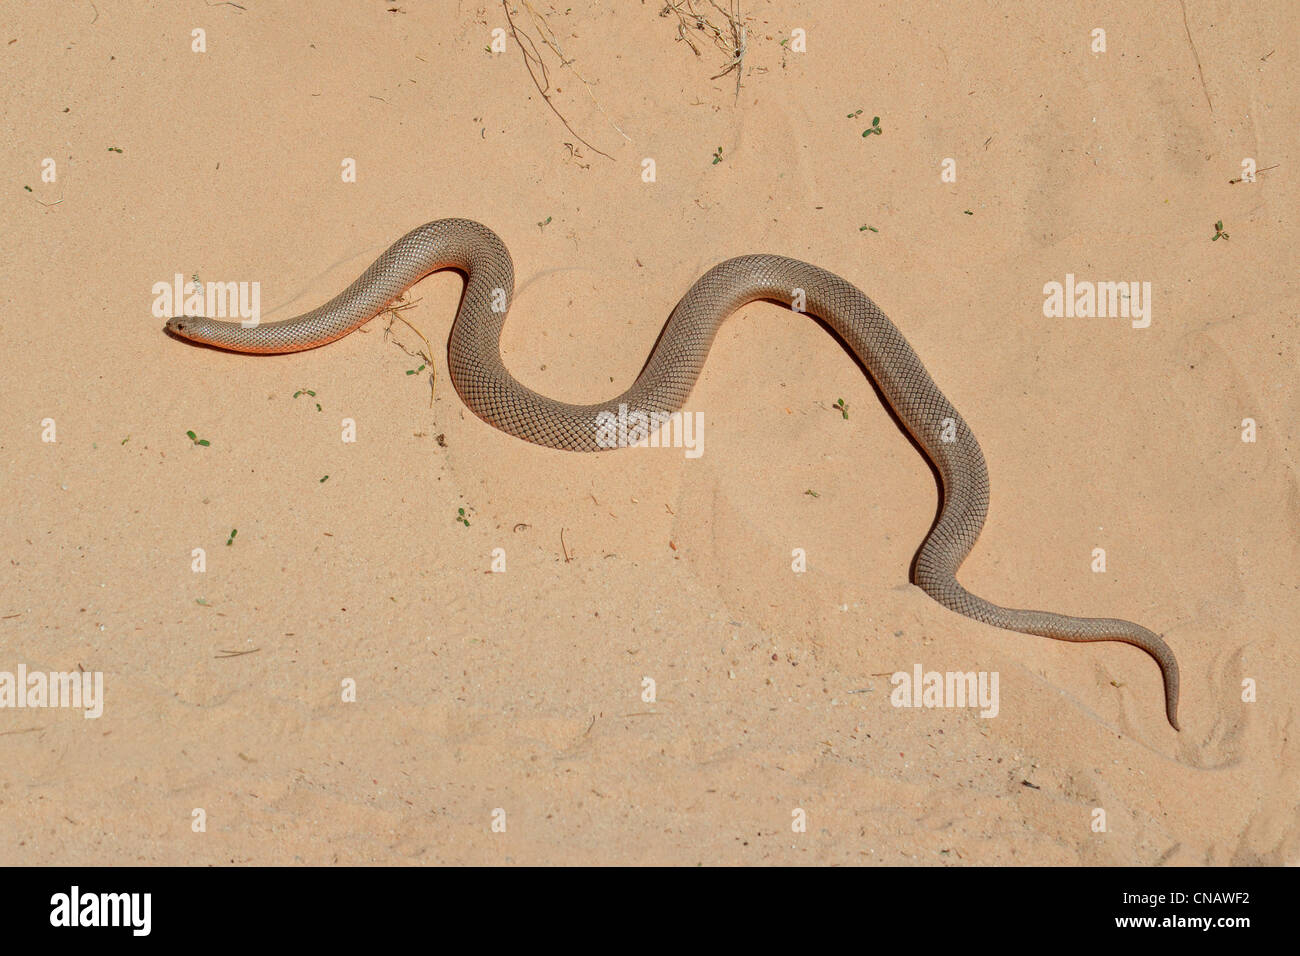 Una mole de serpiente sobre la arena (Pseudaspis cana), África del Sur Foto de stock